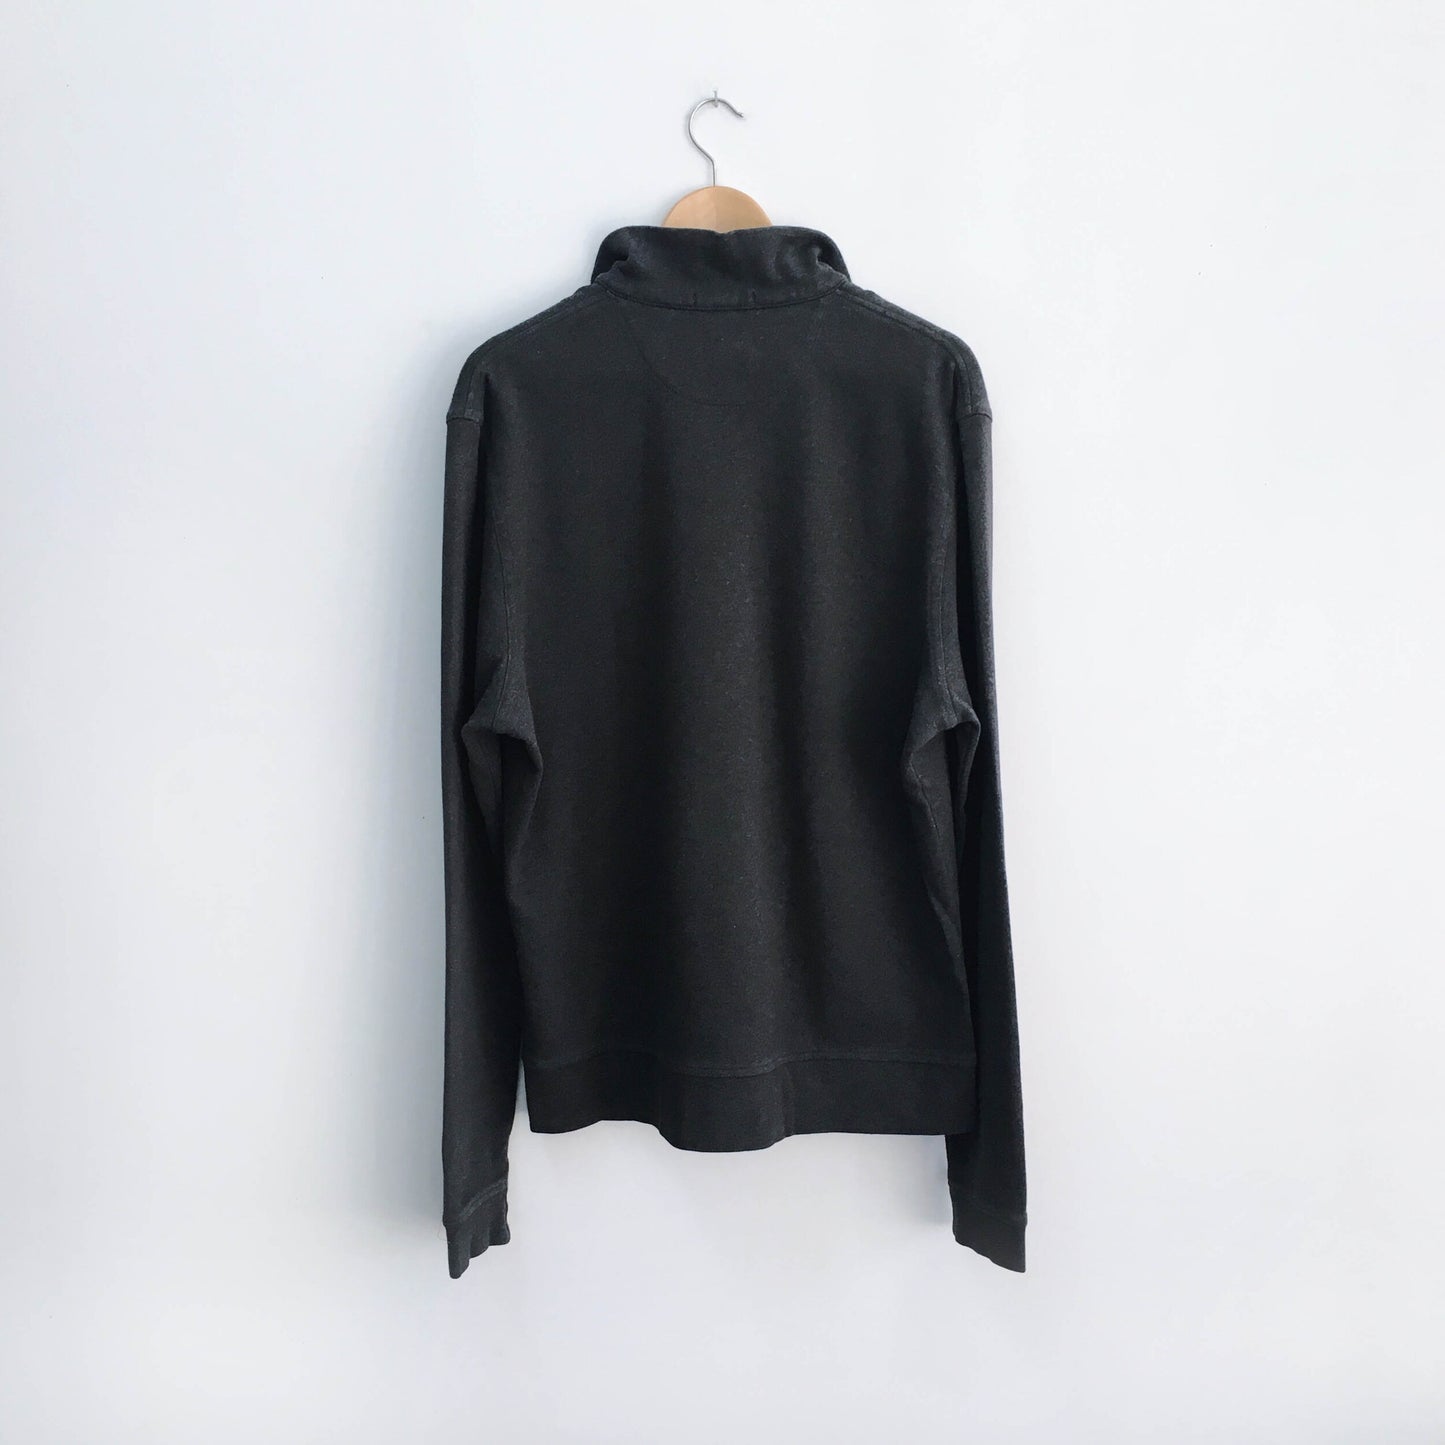 Burberry 1/4 zip Long Sleeve Shirt - size XL